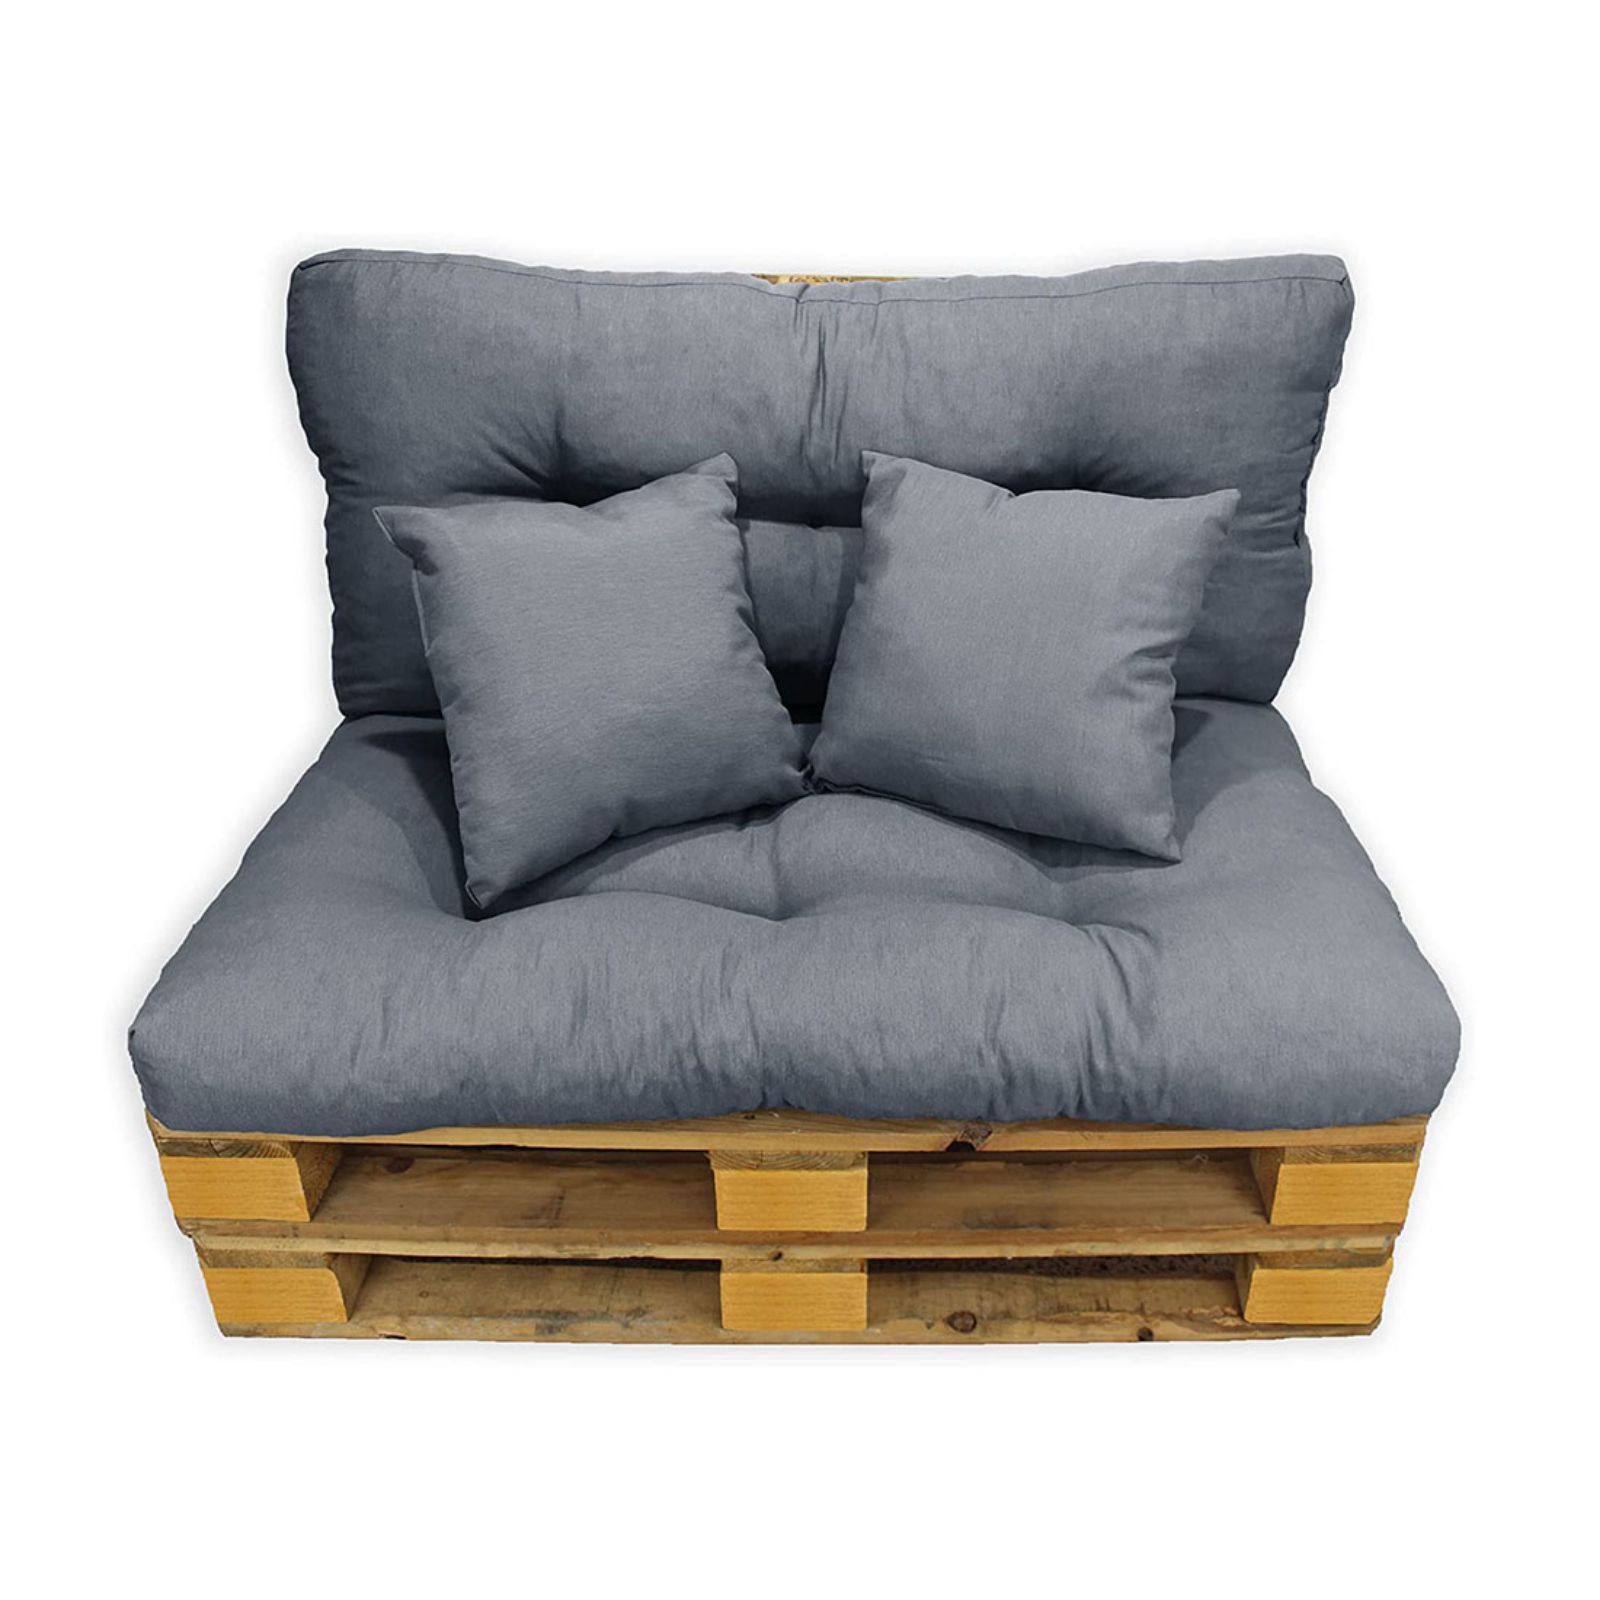 Imagen de Colchonetas para palets de sofa gris oscuro